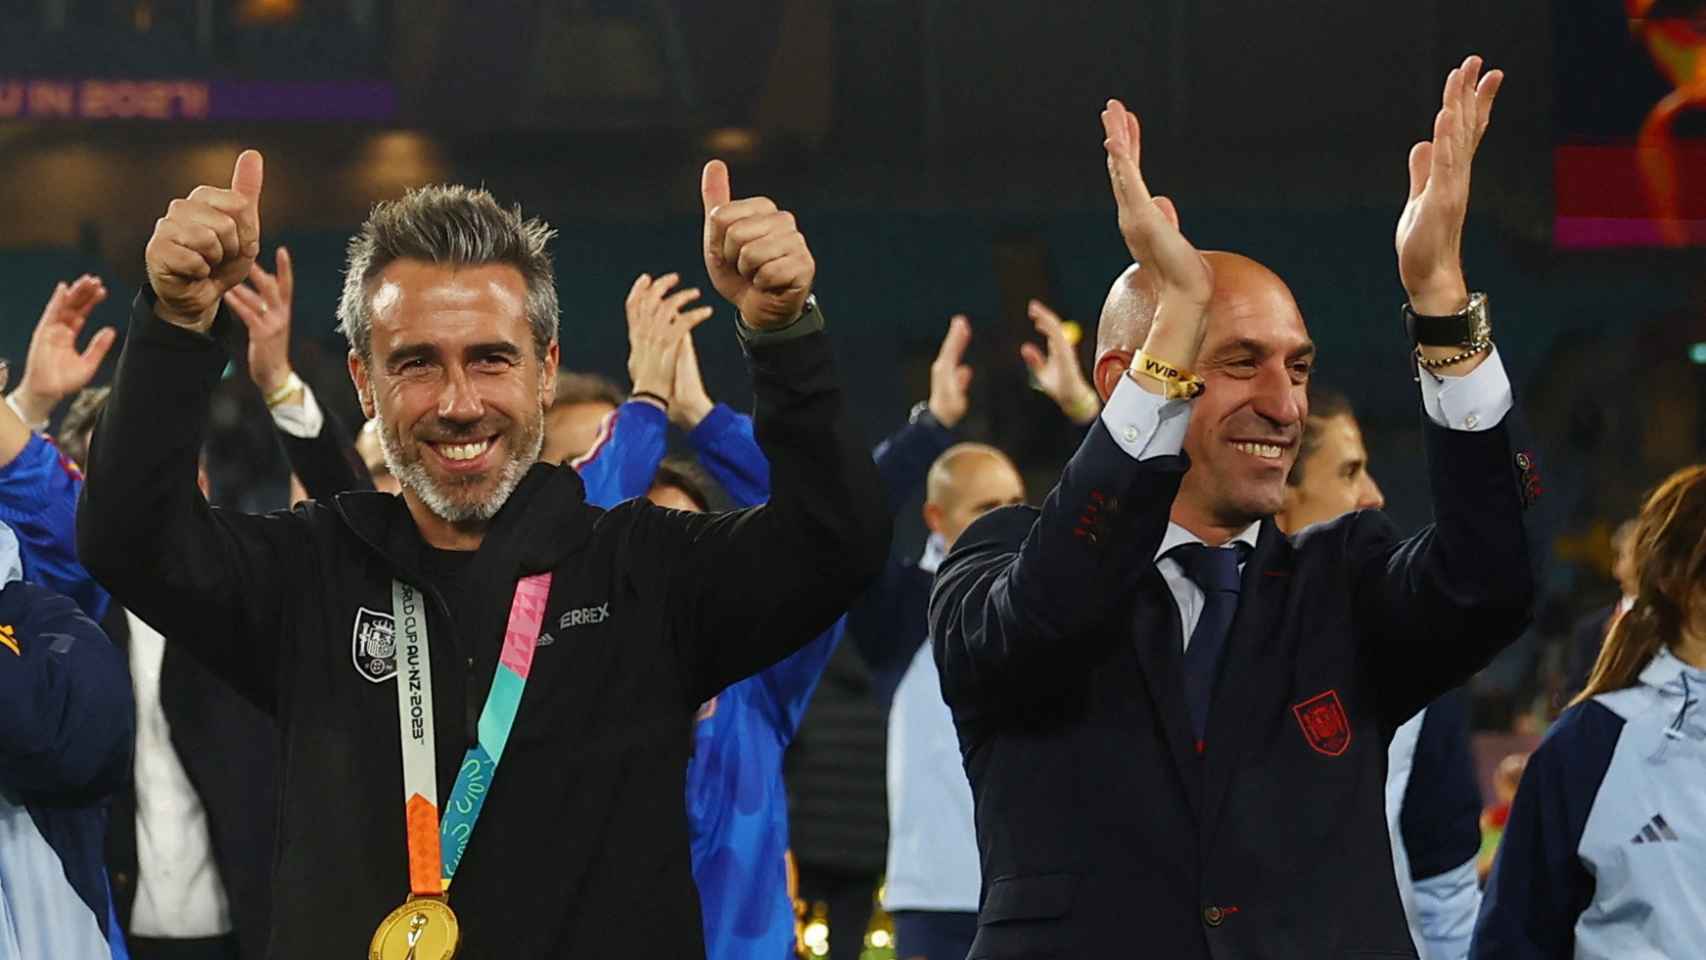 Jorge Vilda y Luis Rubiales, tras la final del Mundial de fútbol femenino.